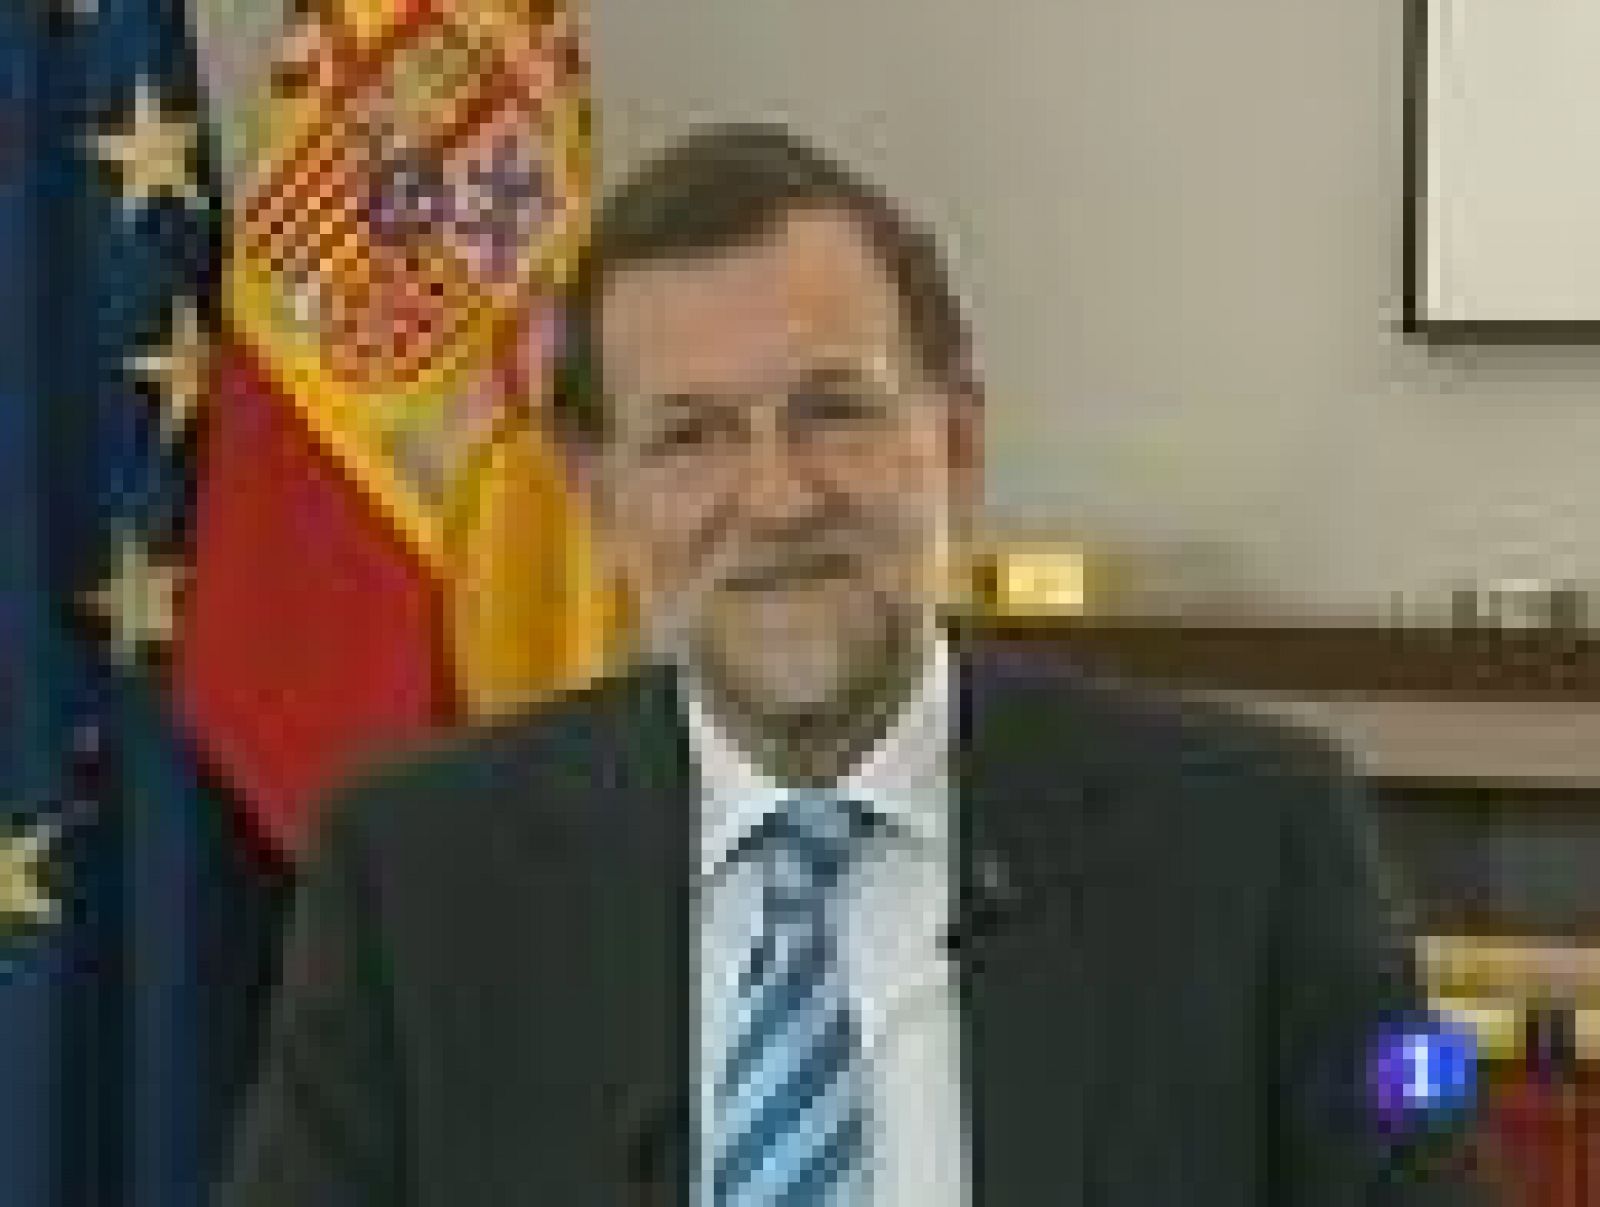 El presidente del Gobierno, Mariano Rajoy, ha declarado este martes a la Agencia Efe, en su primera entrevista desde que asumió el cargo, que la subida del IRPF aprobada por su Gobierno es "dura y dolorosa, pero absolutamente imprescindible". "No quedaba otra opción" ha aseverado, para decir que la decisión es "desagradable" pero que el Gobierno ha intentado ser "justo y equitativo".